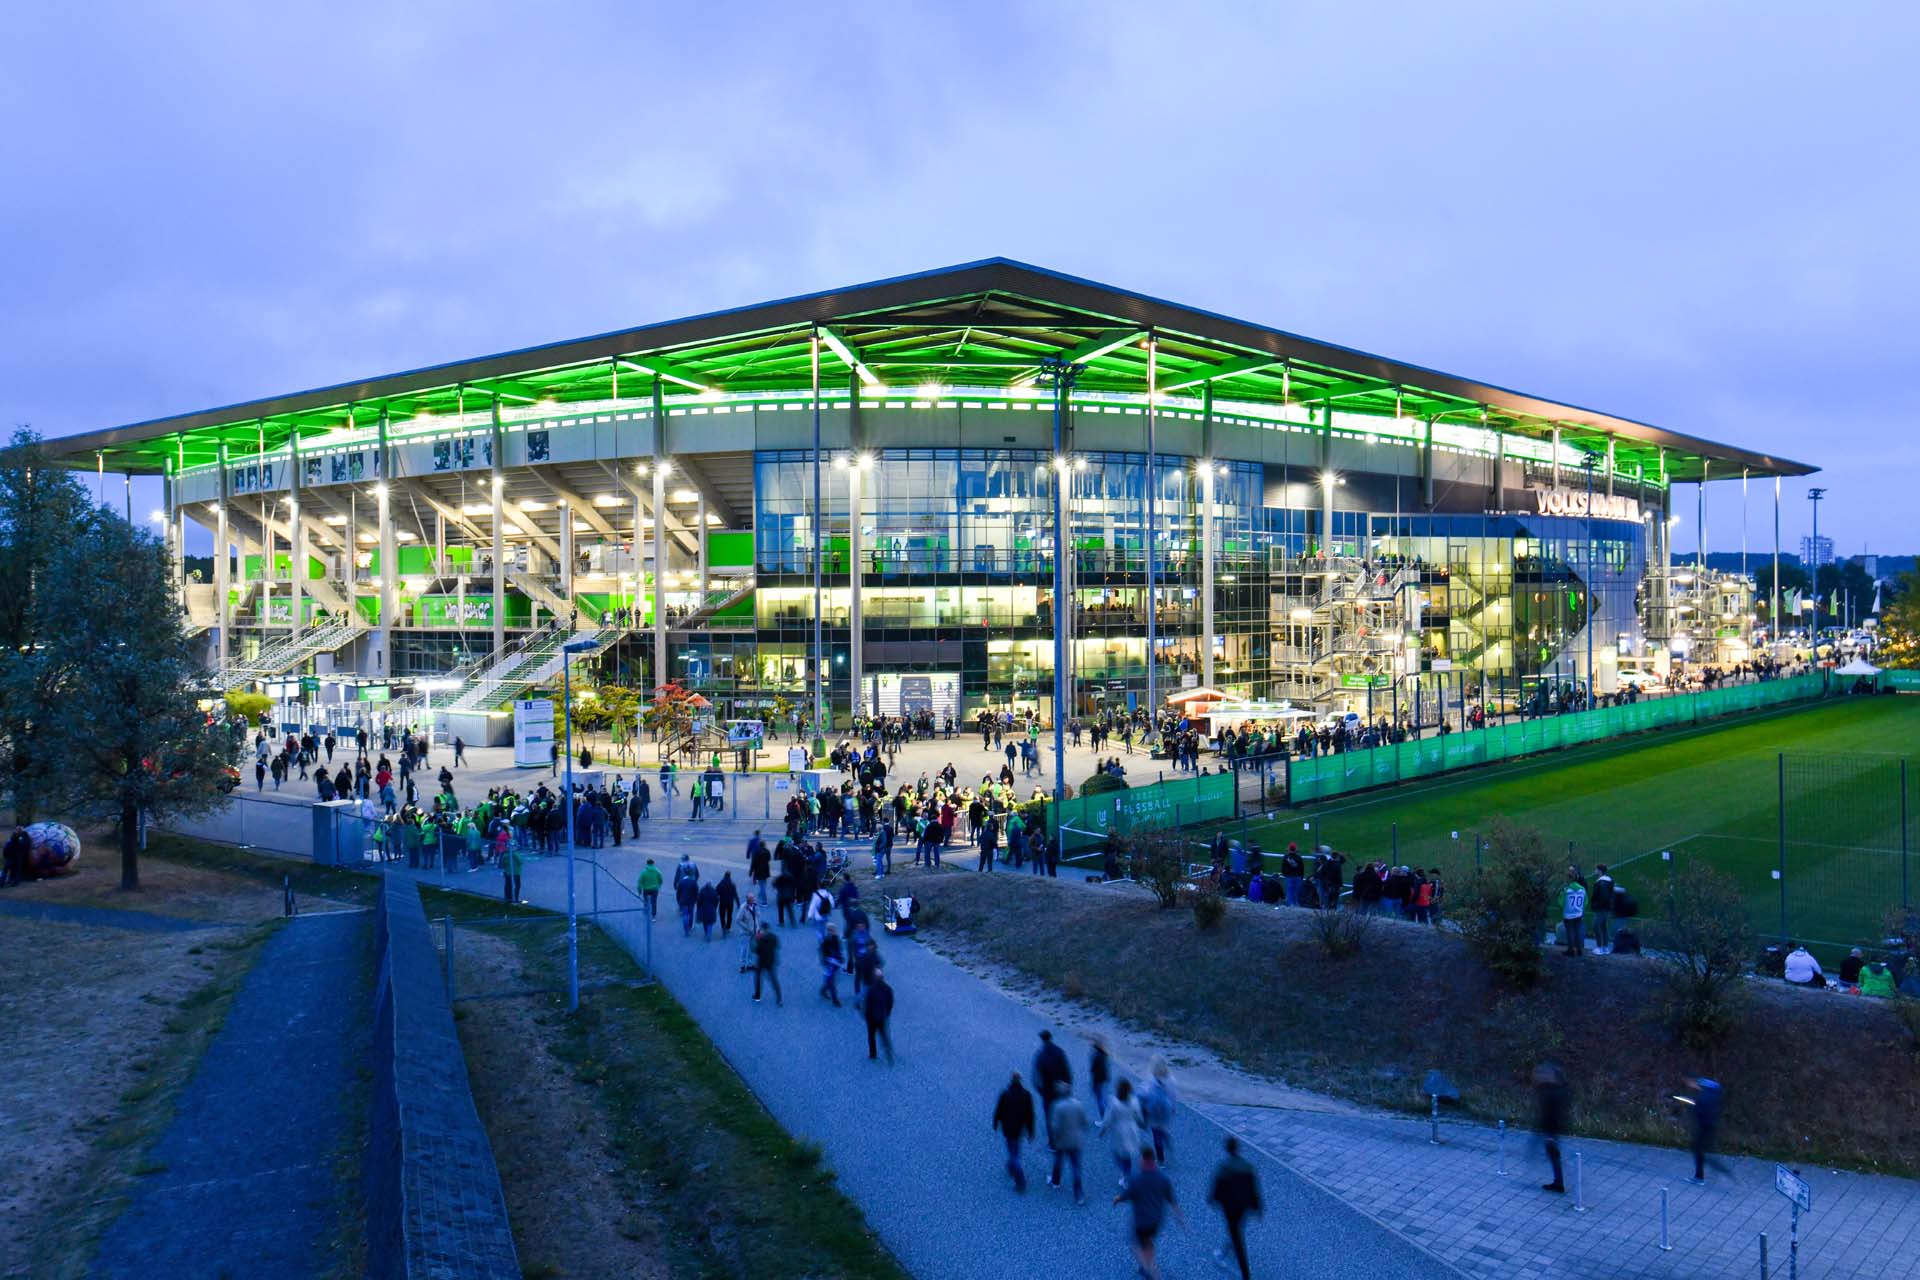 Man blickt am Abend auf die grün beleuchtete Volkswagen Arena